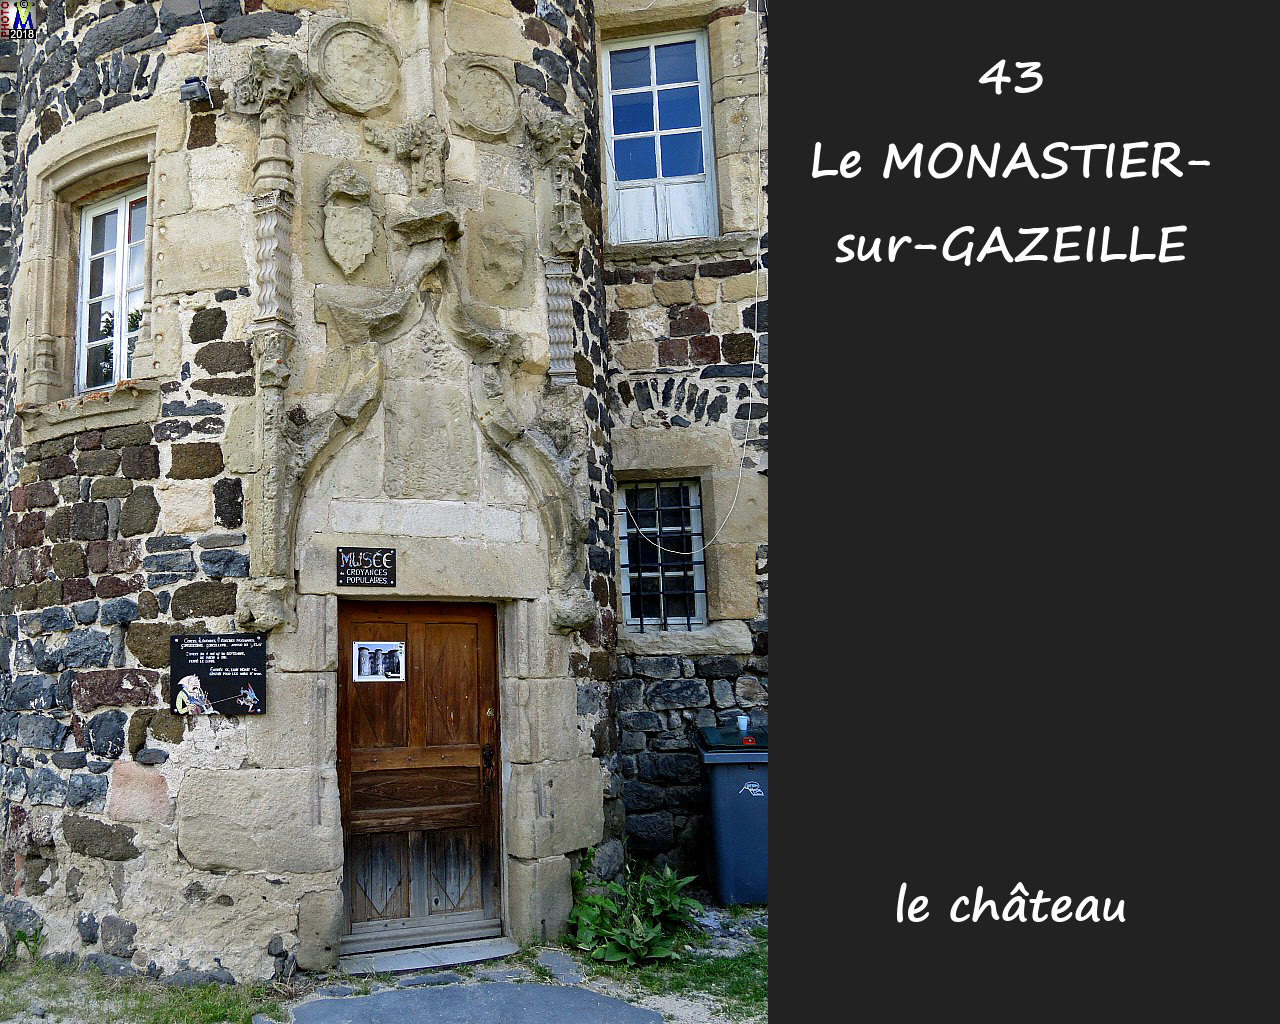 43MONASTIER-GAZEILLE_chateau_120.jpg